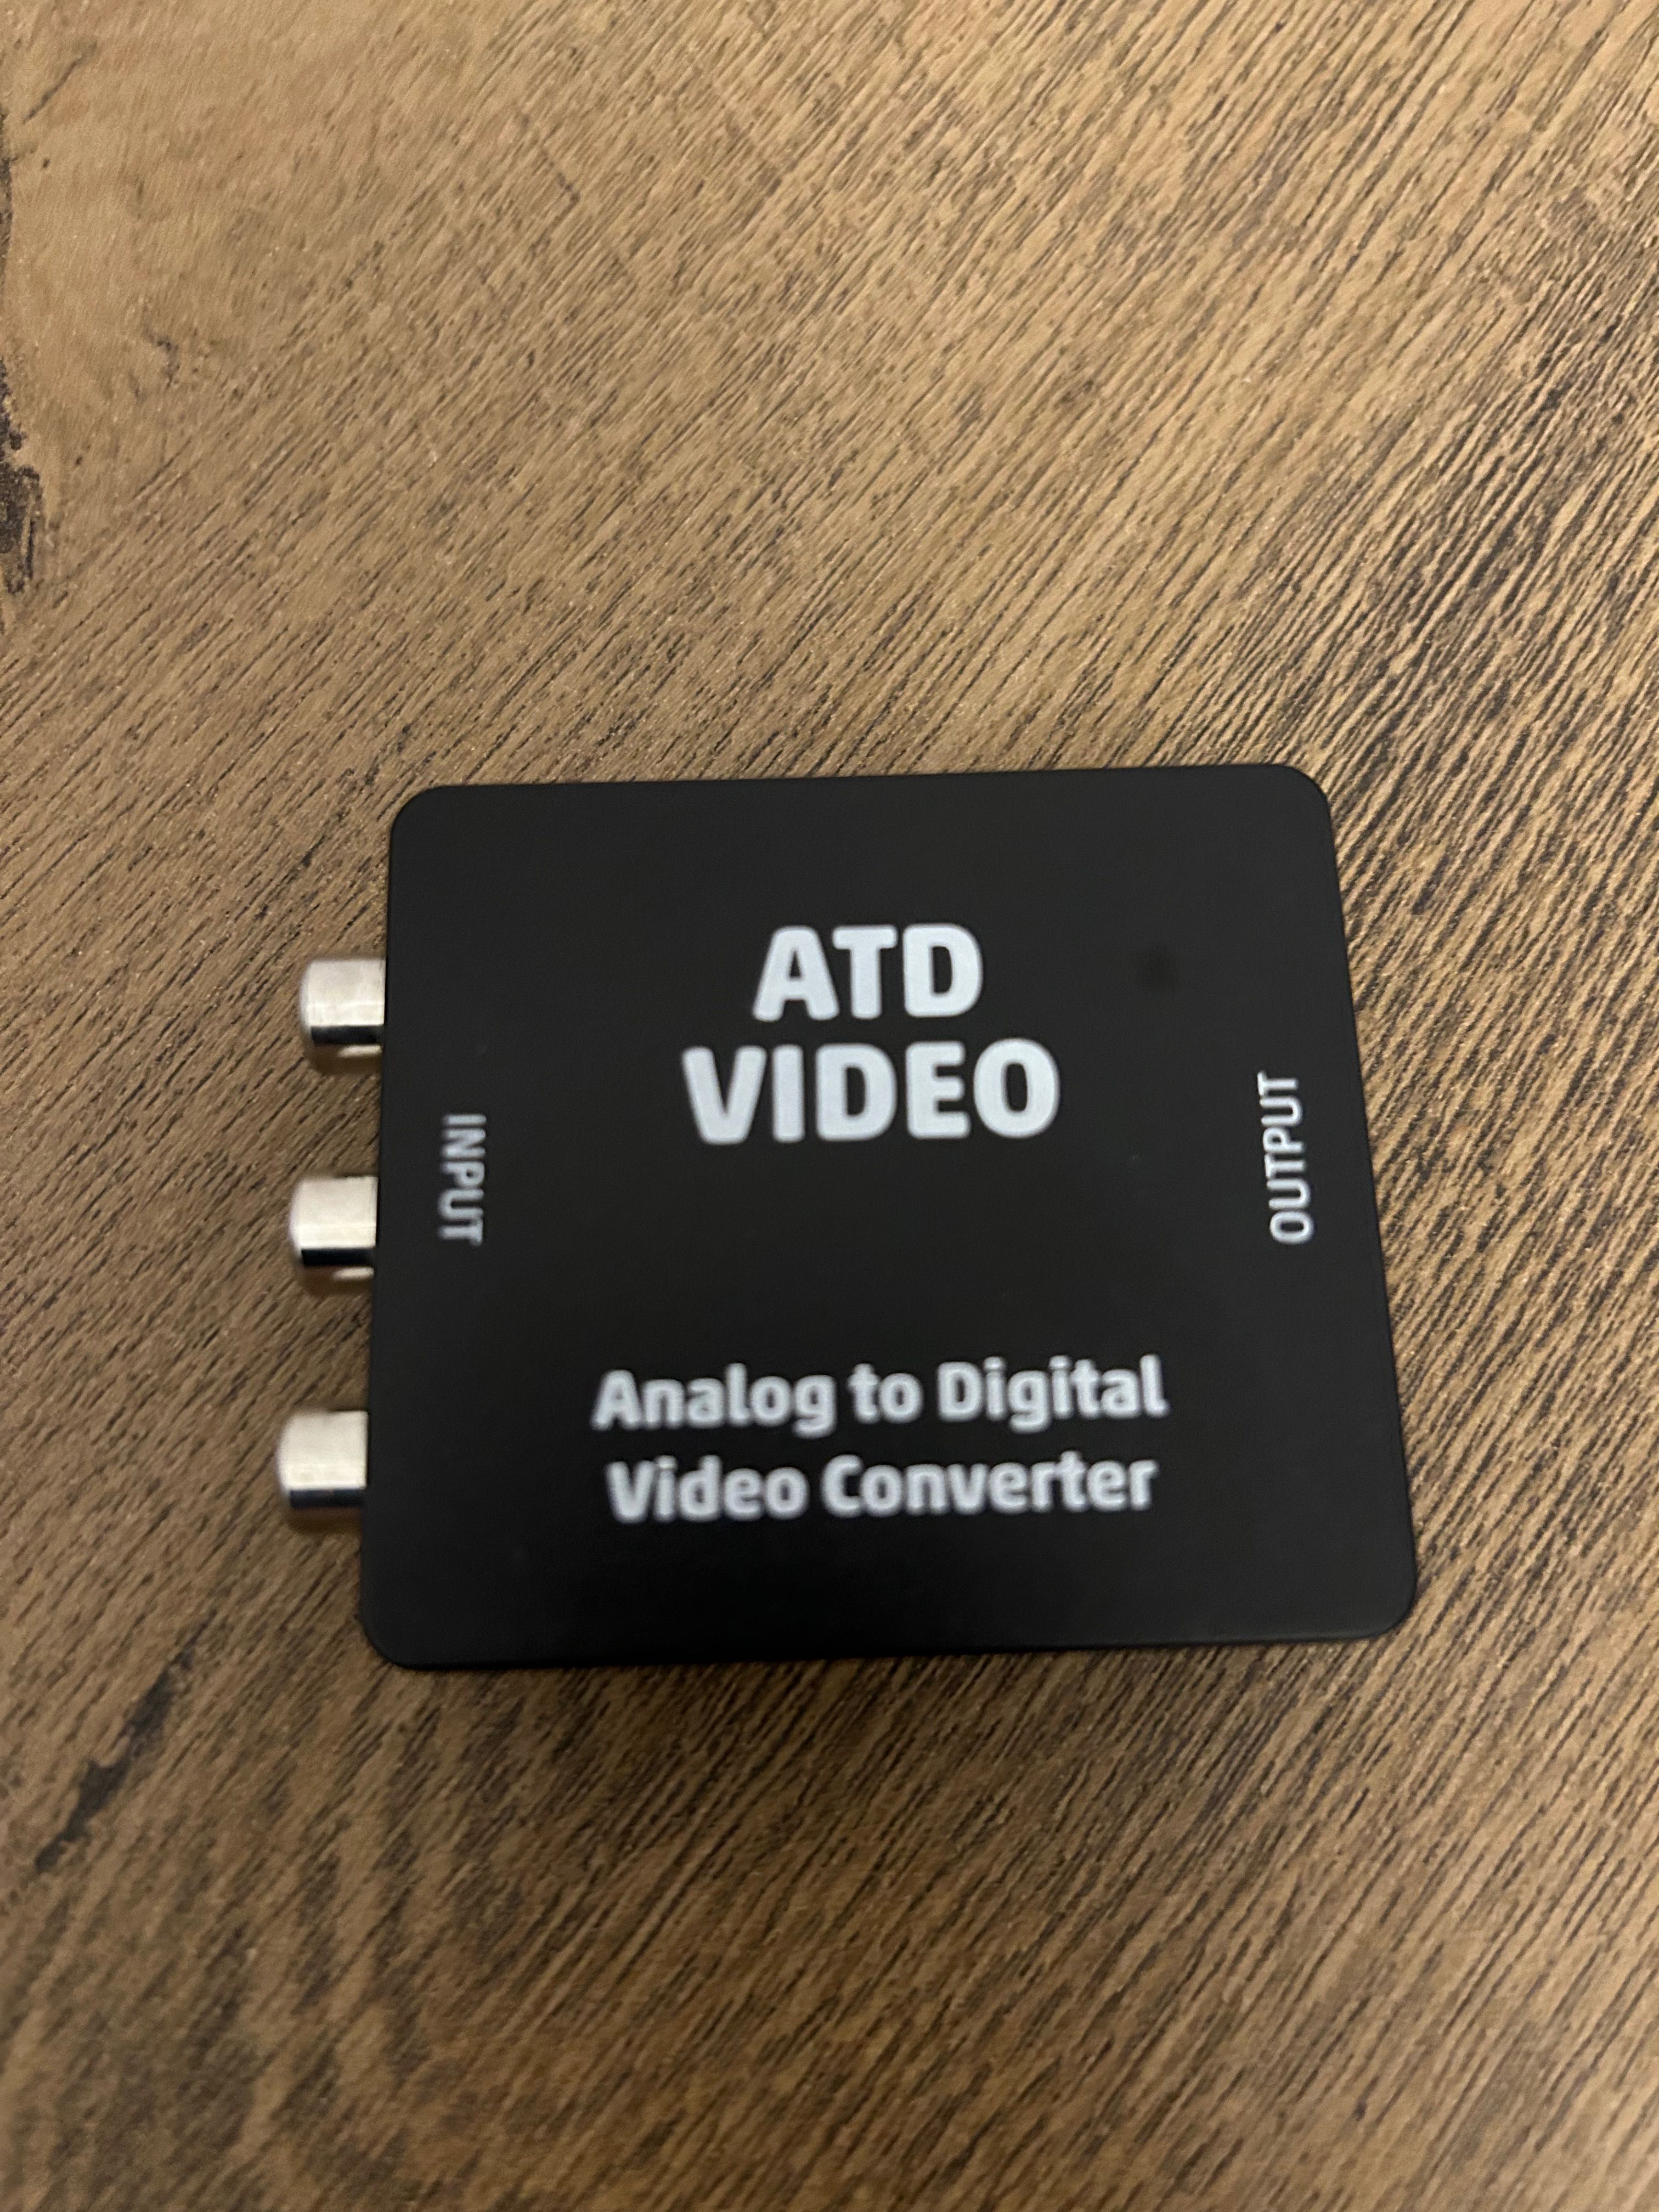 SACD DVD Pioneer DV 575A + covertor RCS vs HDMI